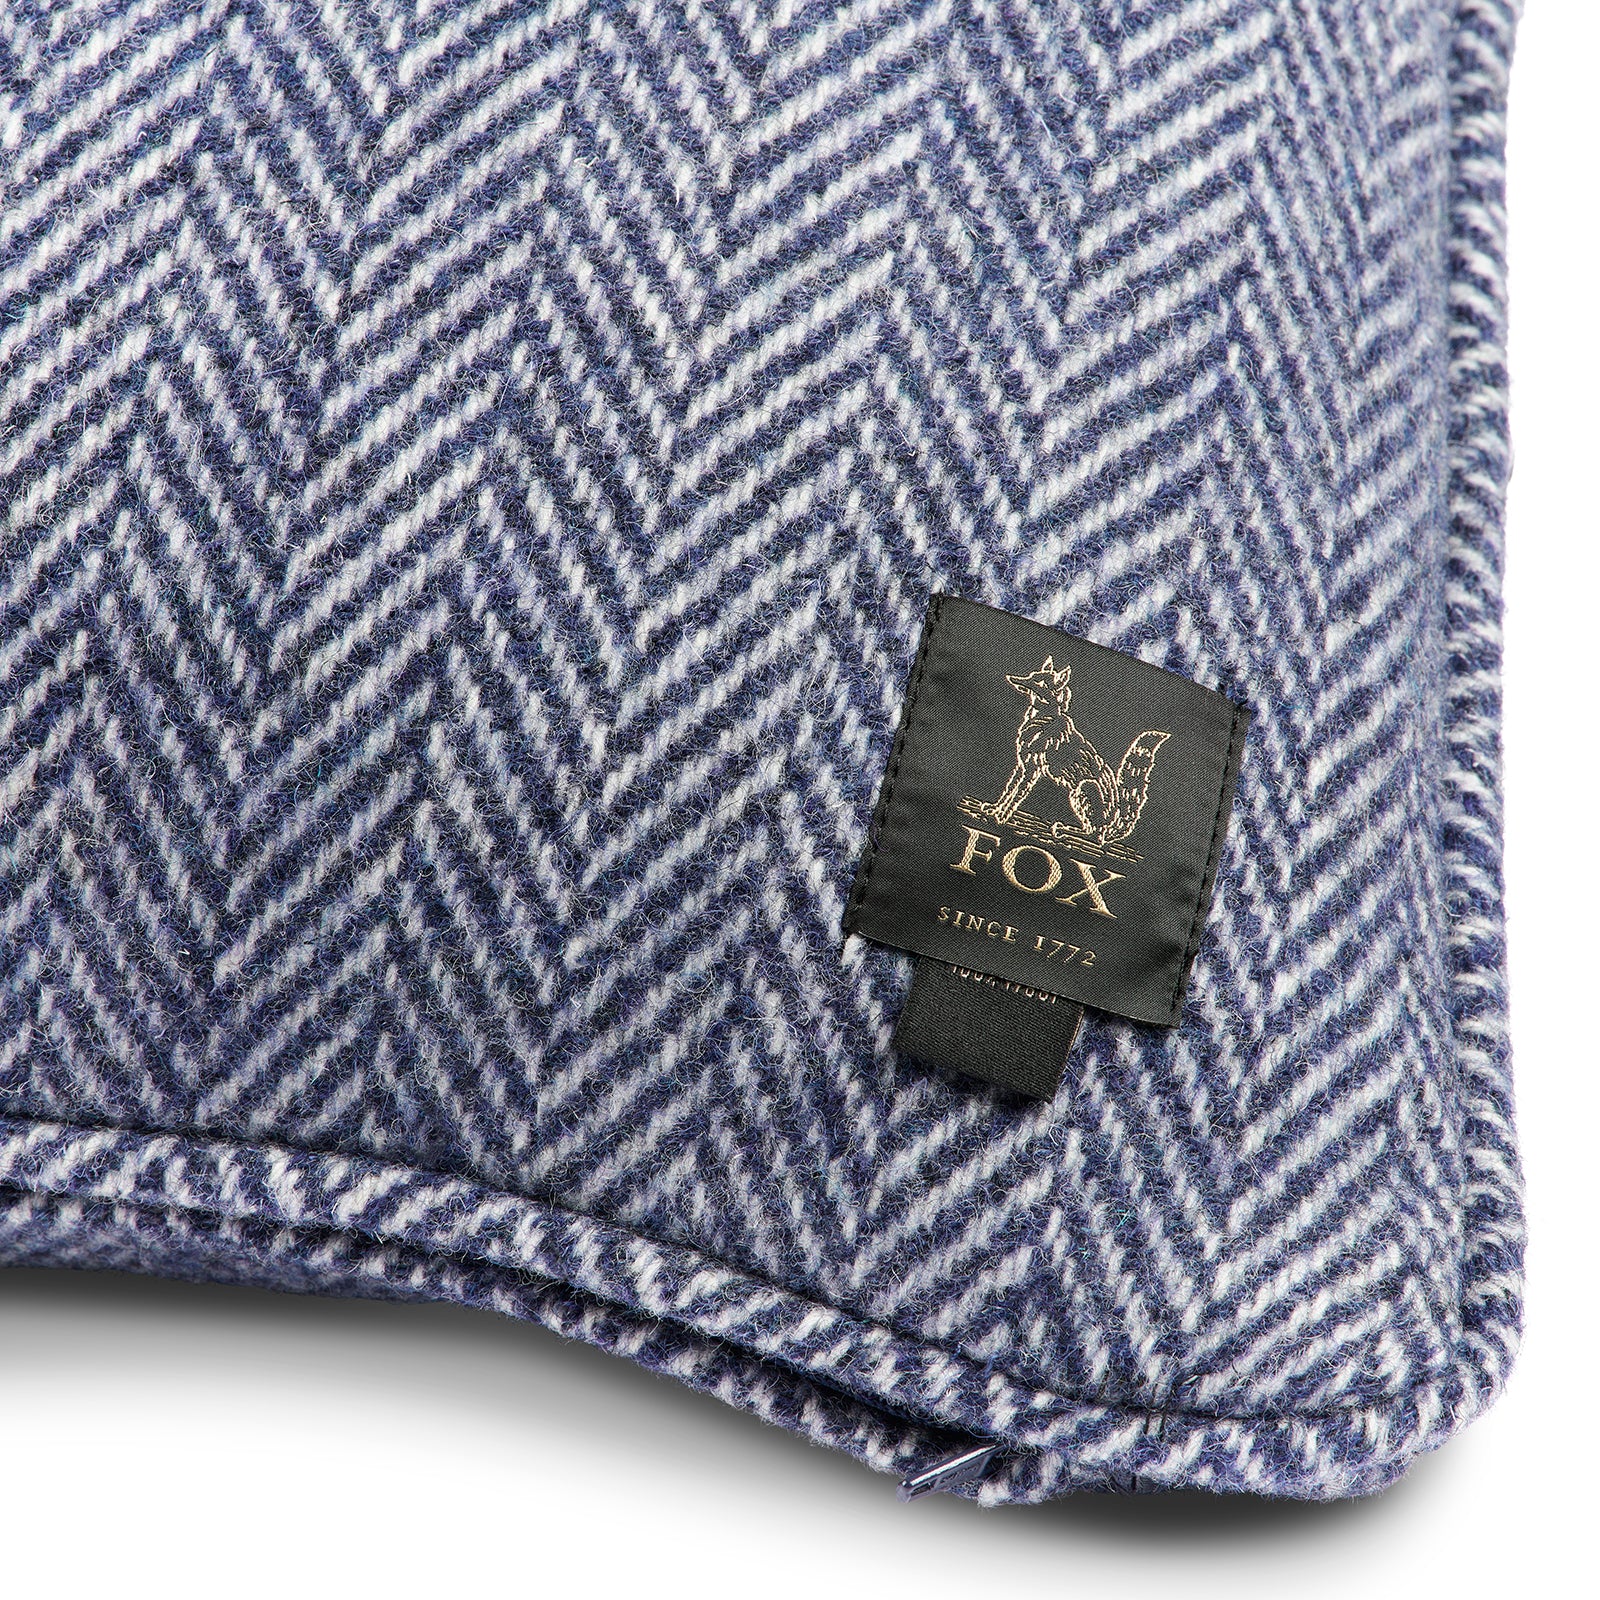 Fox Blue & White Herringbone Cushion Cover